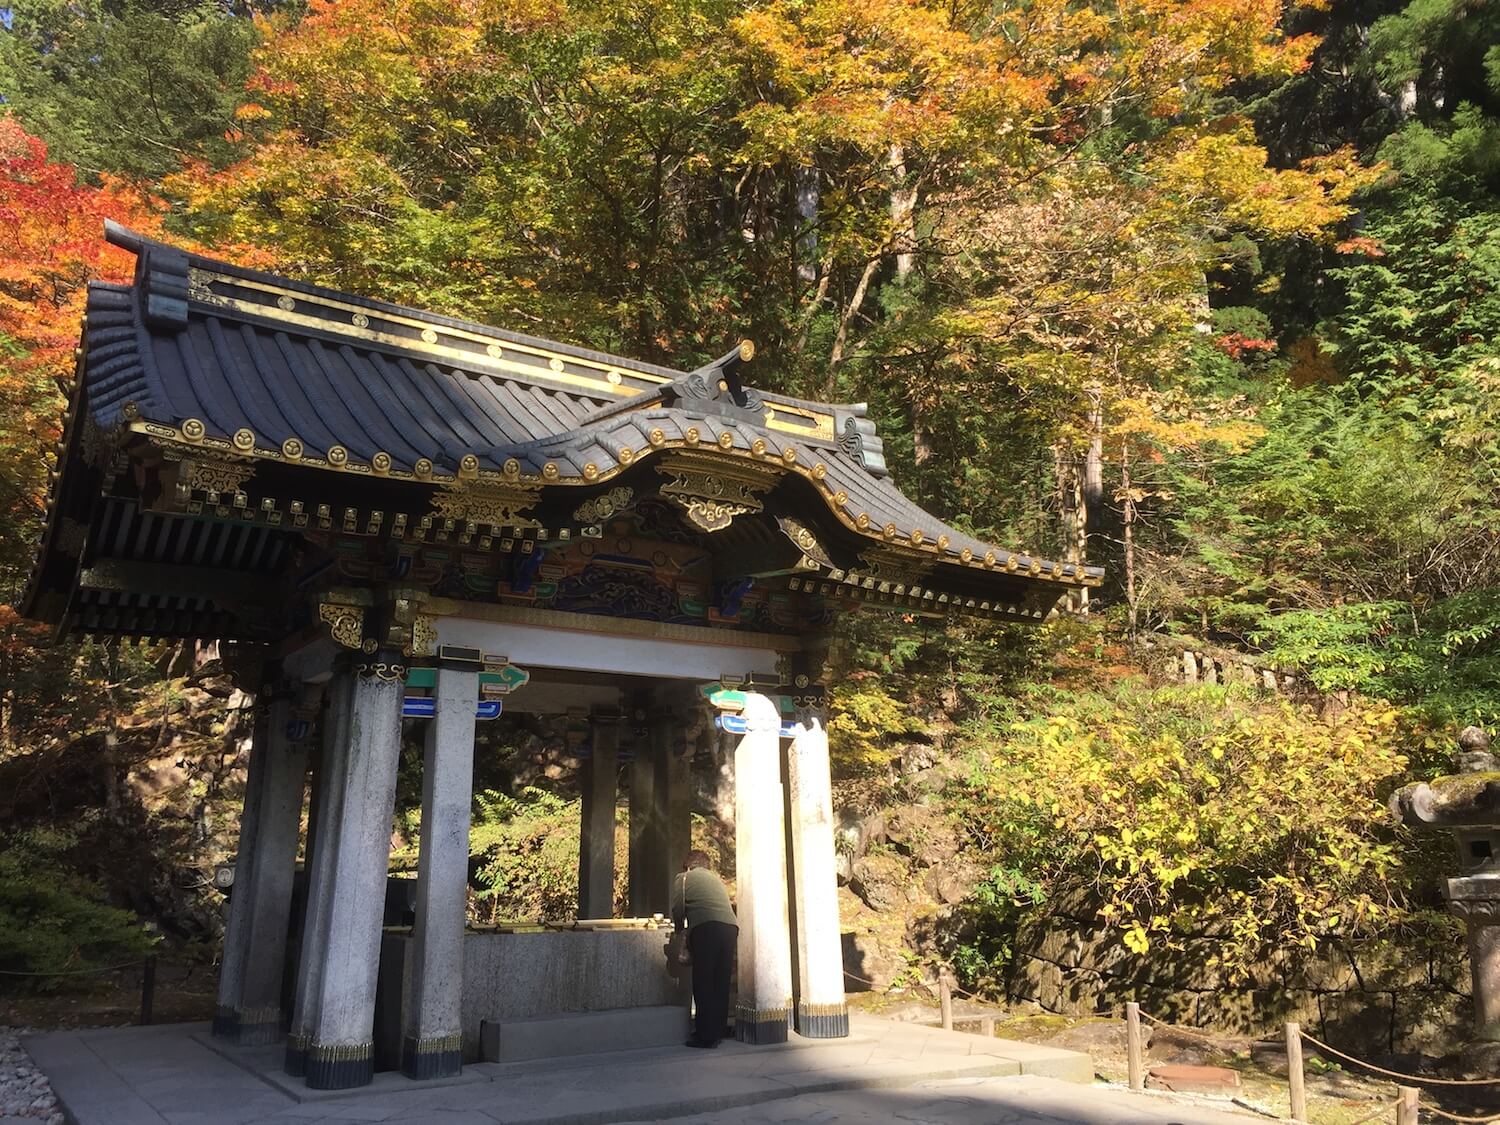 เที่ยวญี่ปุ่น ฤดูใบไม้เปลี่ยนสี 2 วัน 1 คืน ที่นิกโก้ (Nikko)